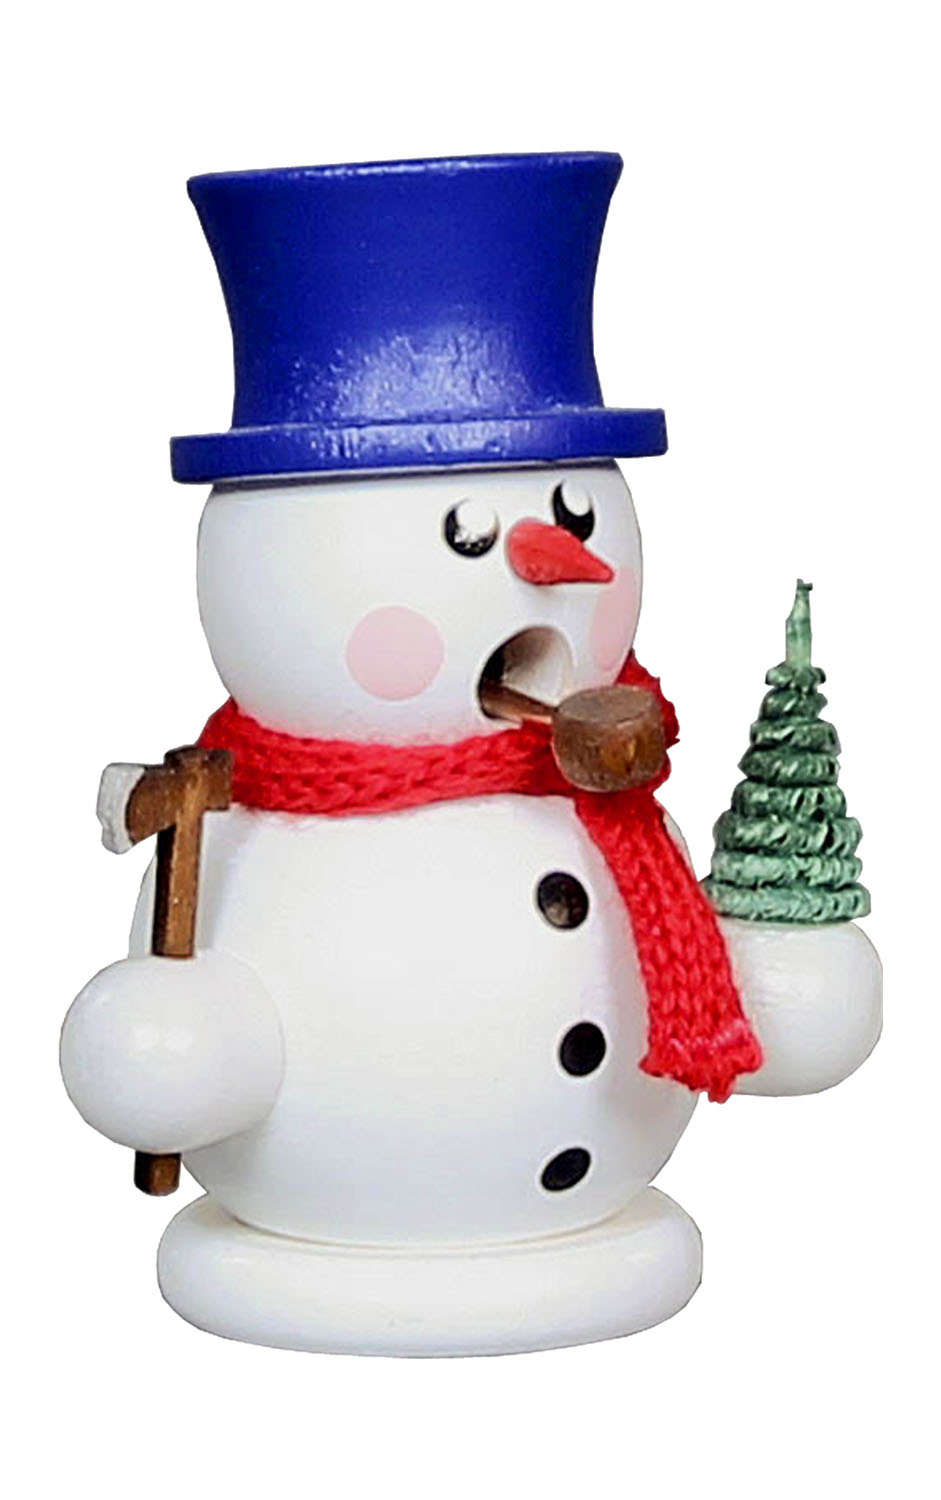 Dregeno Incense Burner - Snowman with tree - 3.25"H x 2.5"W x 2"D